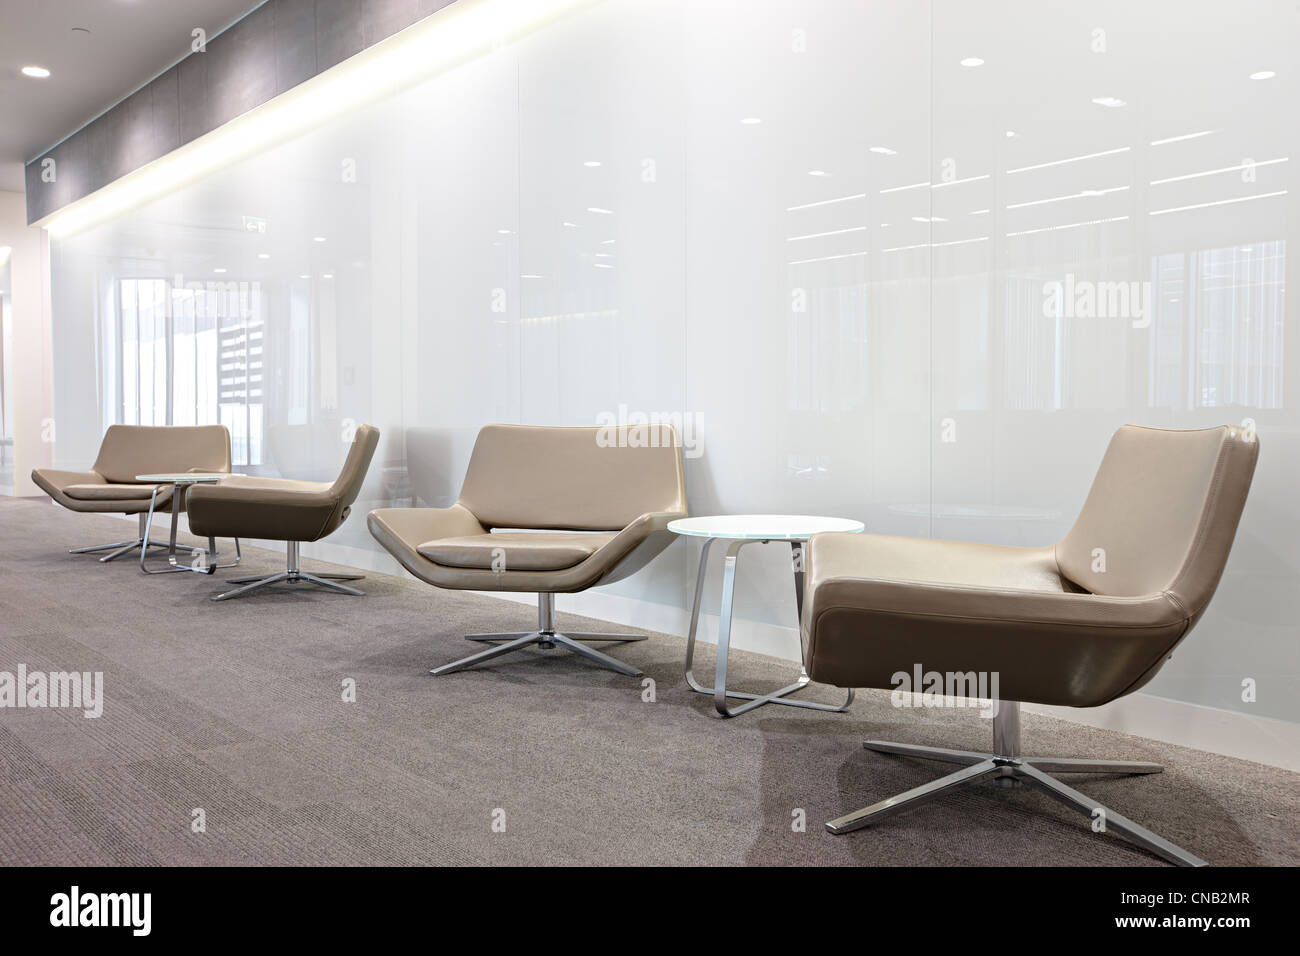 Mur de verre blanc chaises beige city office corridor Banque D'Images